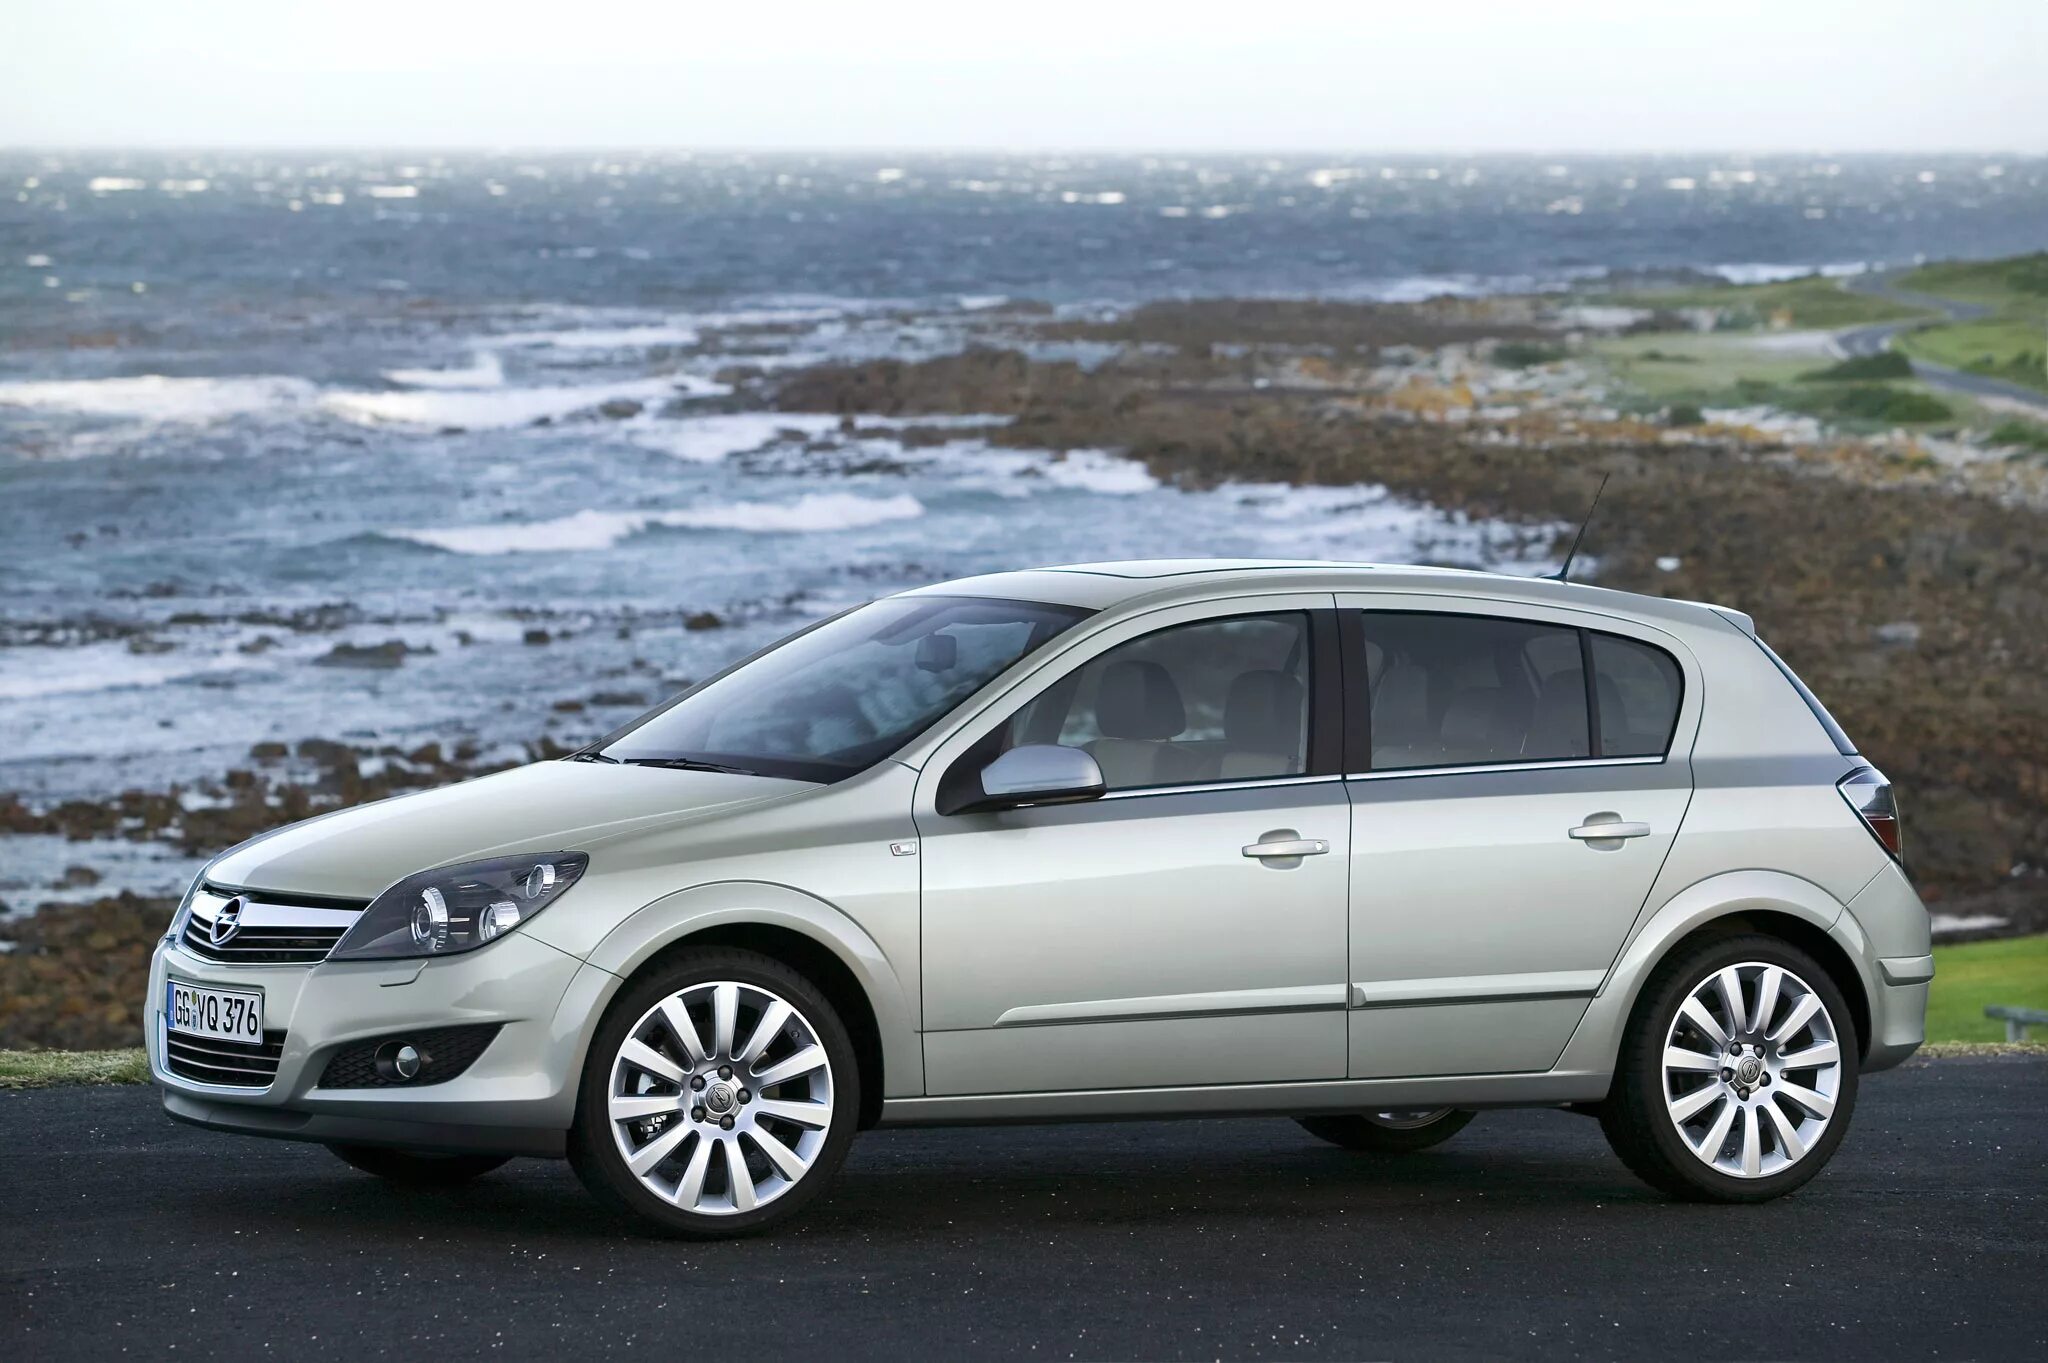 Opel Astra h 2007. Opel Astra 2007 Hatchback. Opel Astra h 2014.